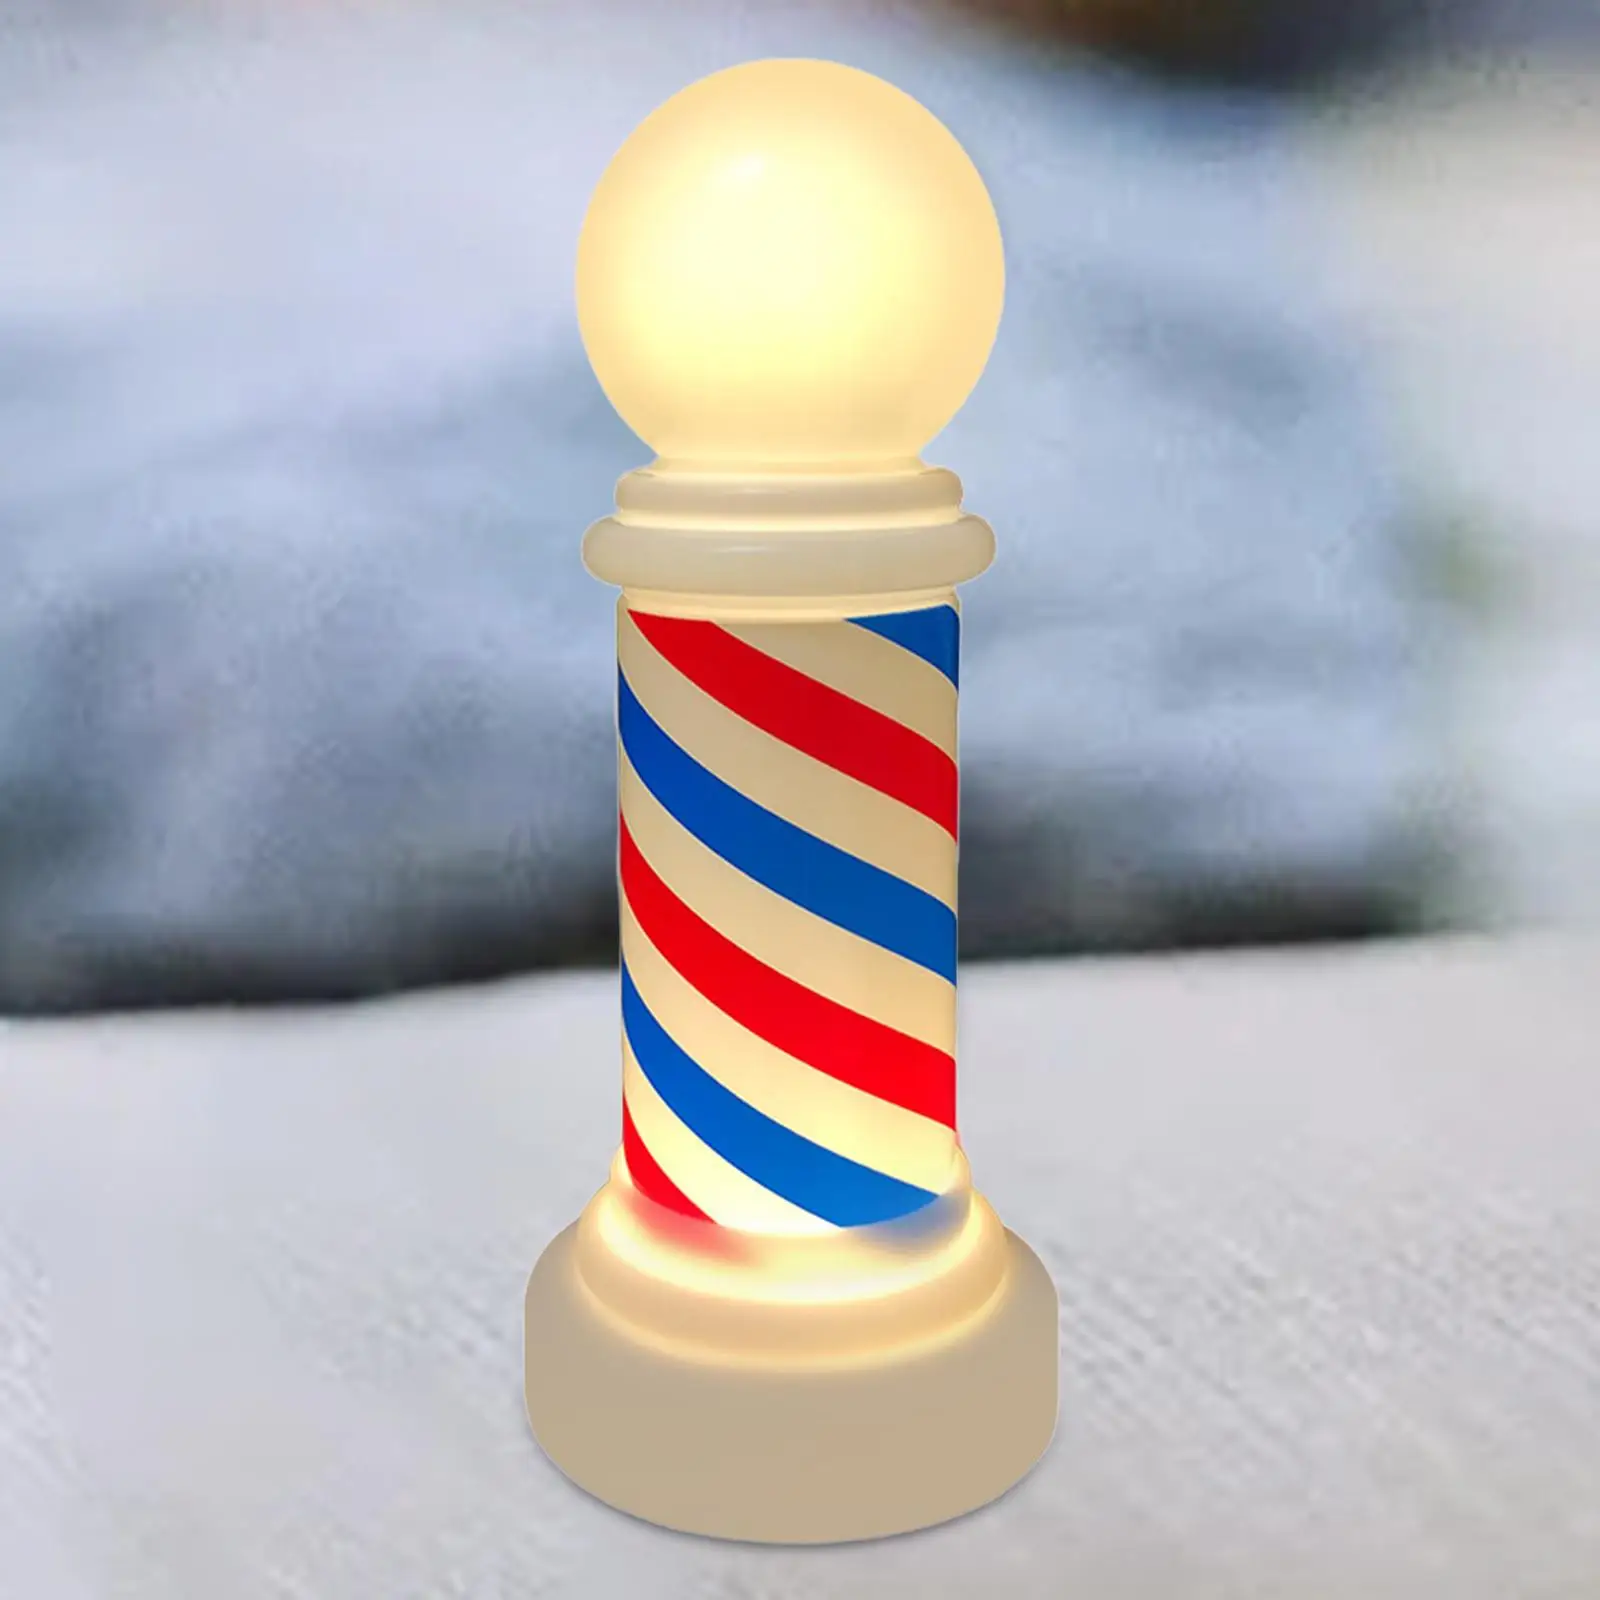 Barber Light Signs Barber Equipment Reusable Delicate Barber Decoration Barber Pole Light for Lamp Barber Shop Hair Salon